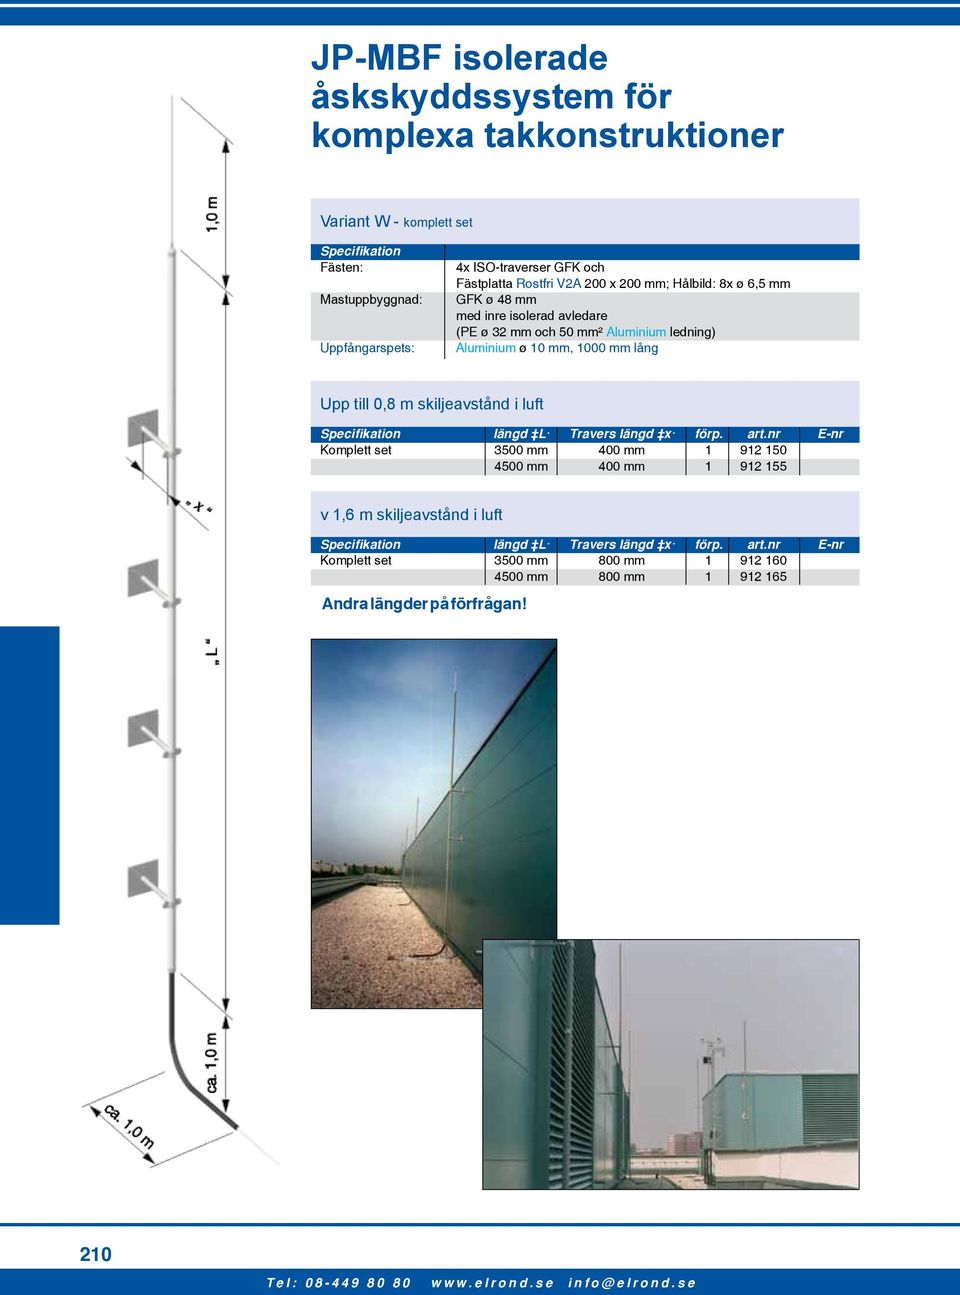 1000 mm lång Upp till 0,8 m skiljeavstånd i luft Specifikation längd L Travers längd x förp. art.